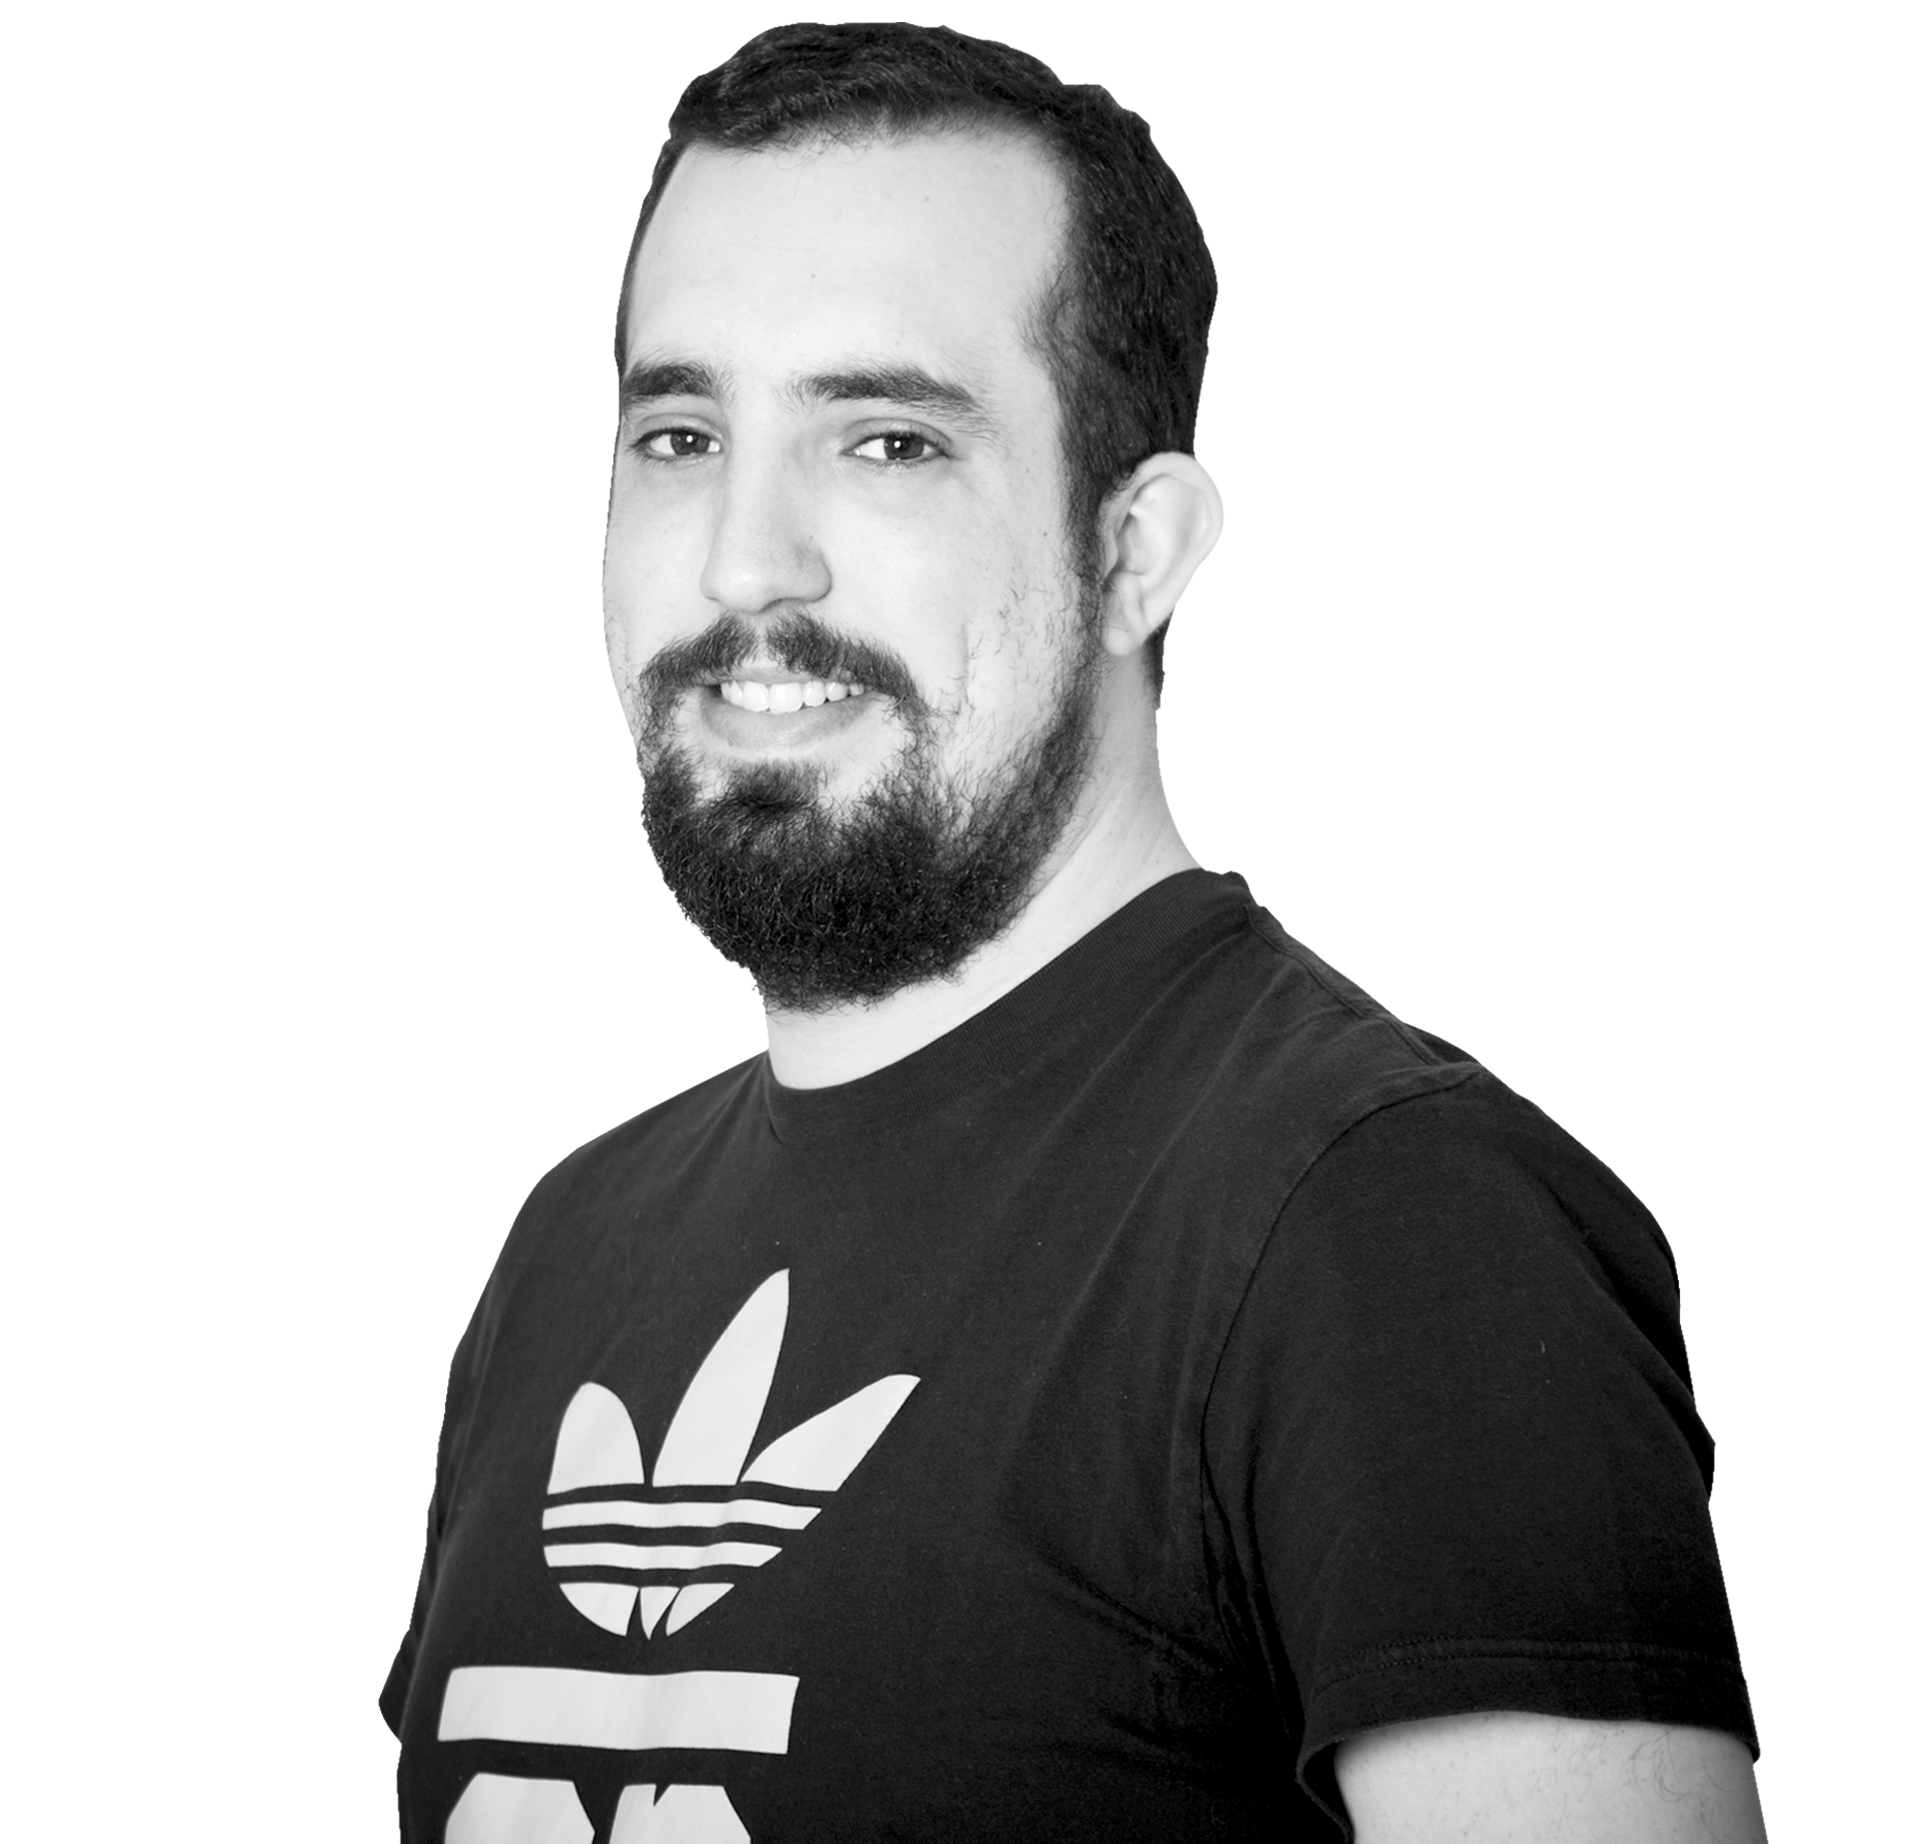 Carlos | Agile developer